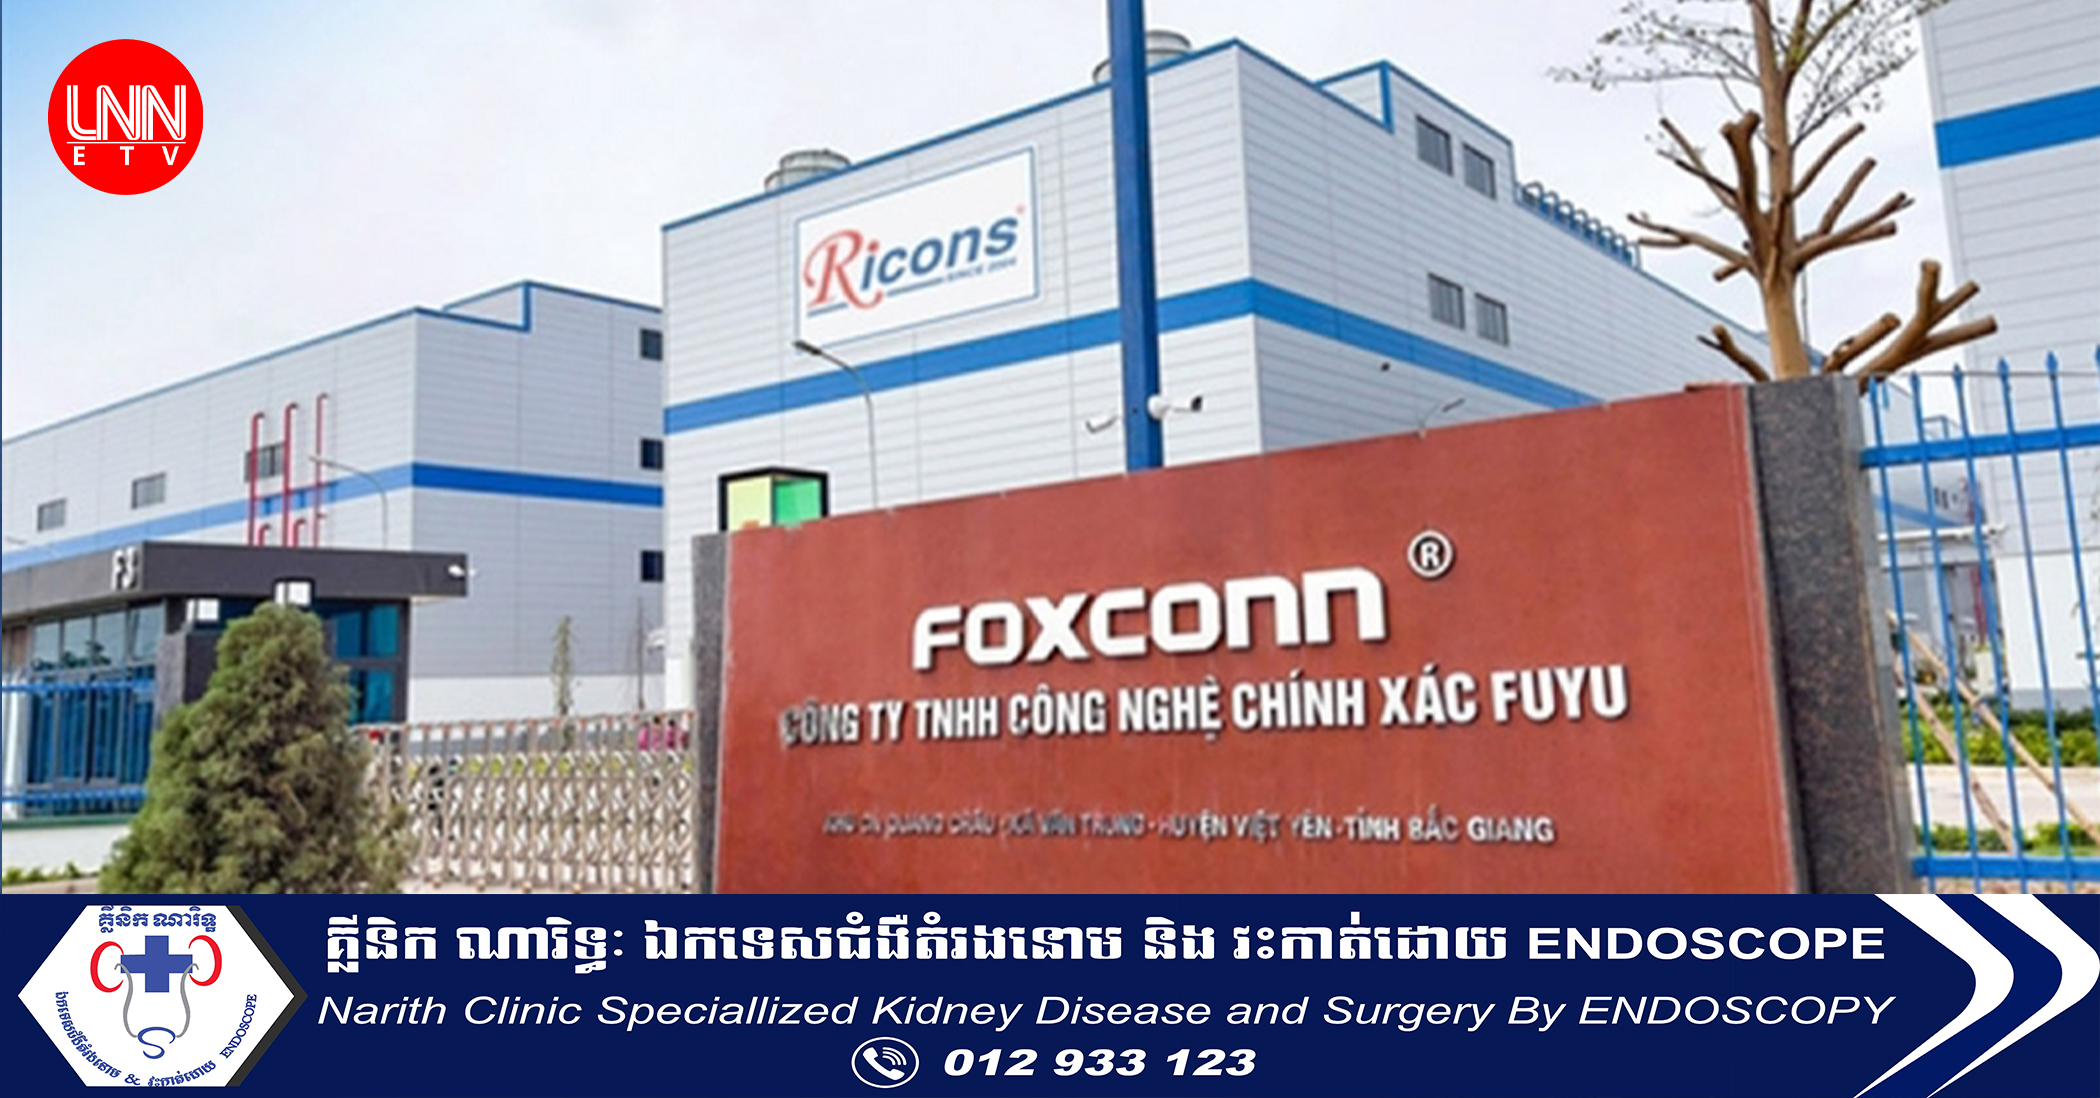 Foxconn នឹងវិនិយោគជាង ២០០លានដុល្លារ ក្នុងគម្រោងចំនួន ២នៅភាគខាងជើងប្រទេសវៀតណាម